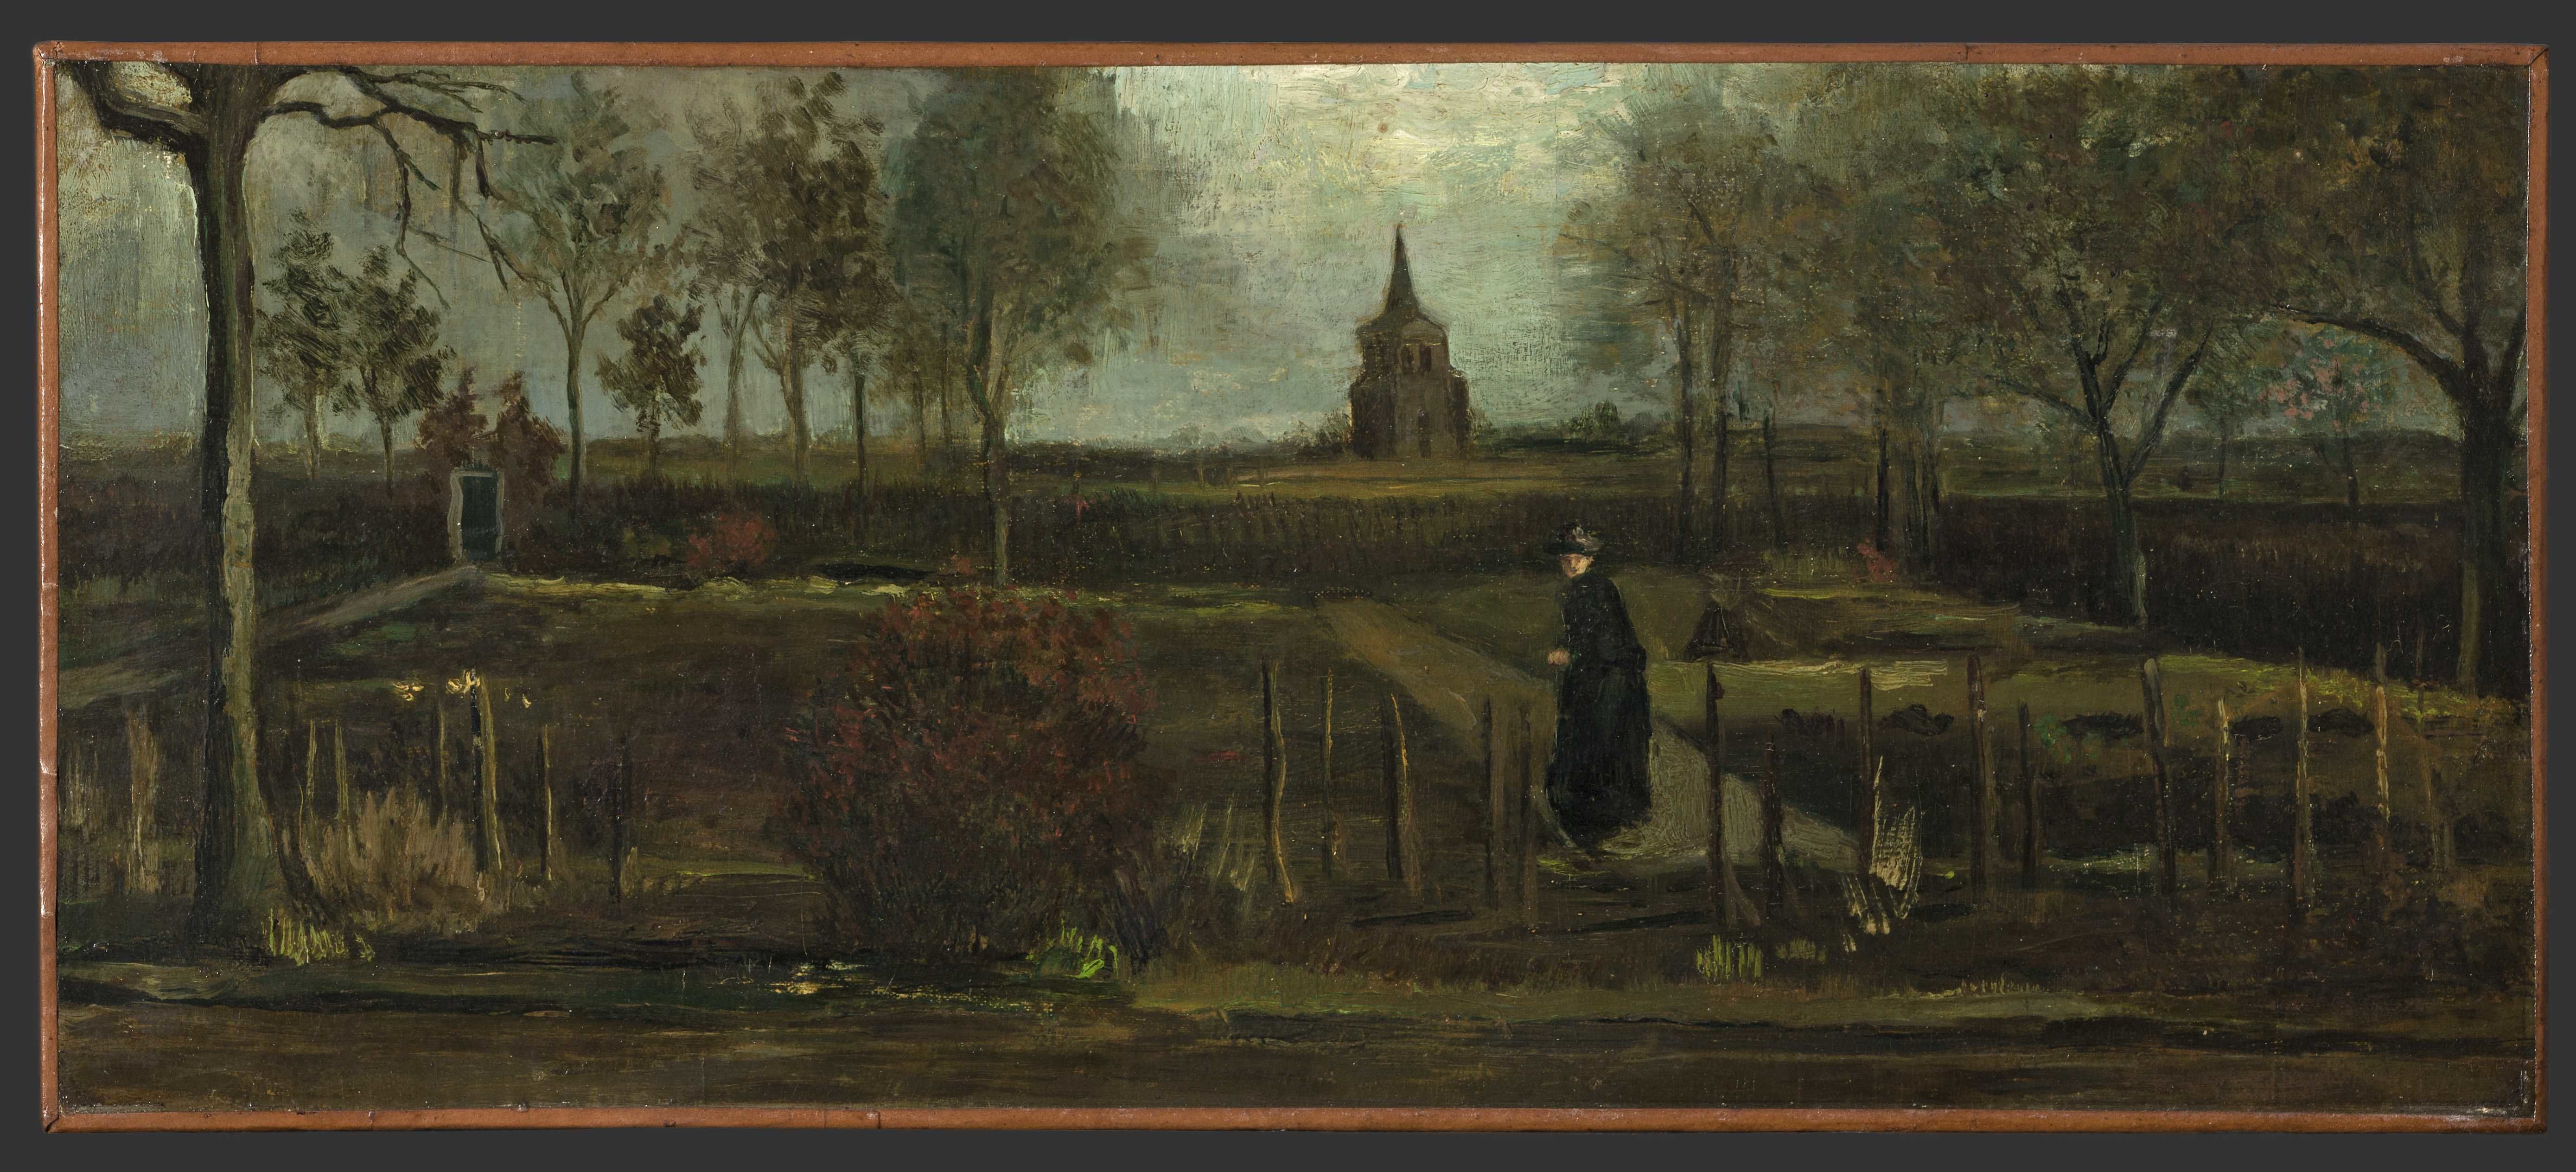 Van Gogh painting stolen